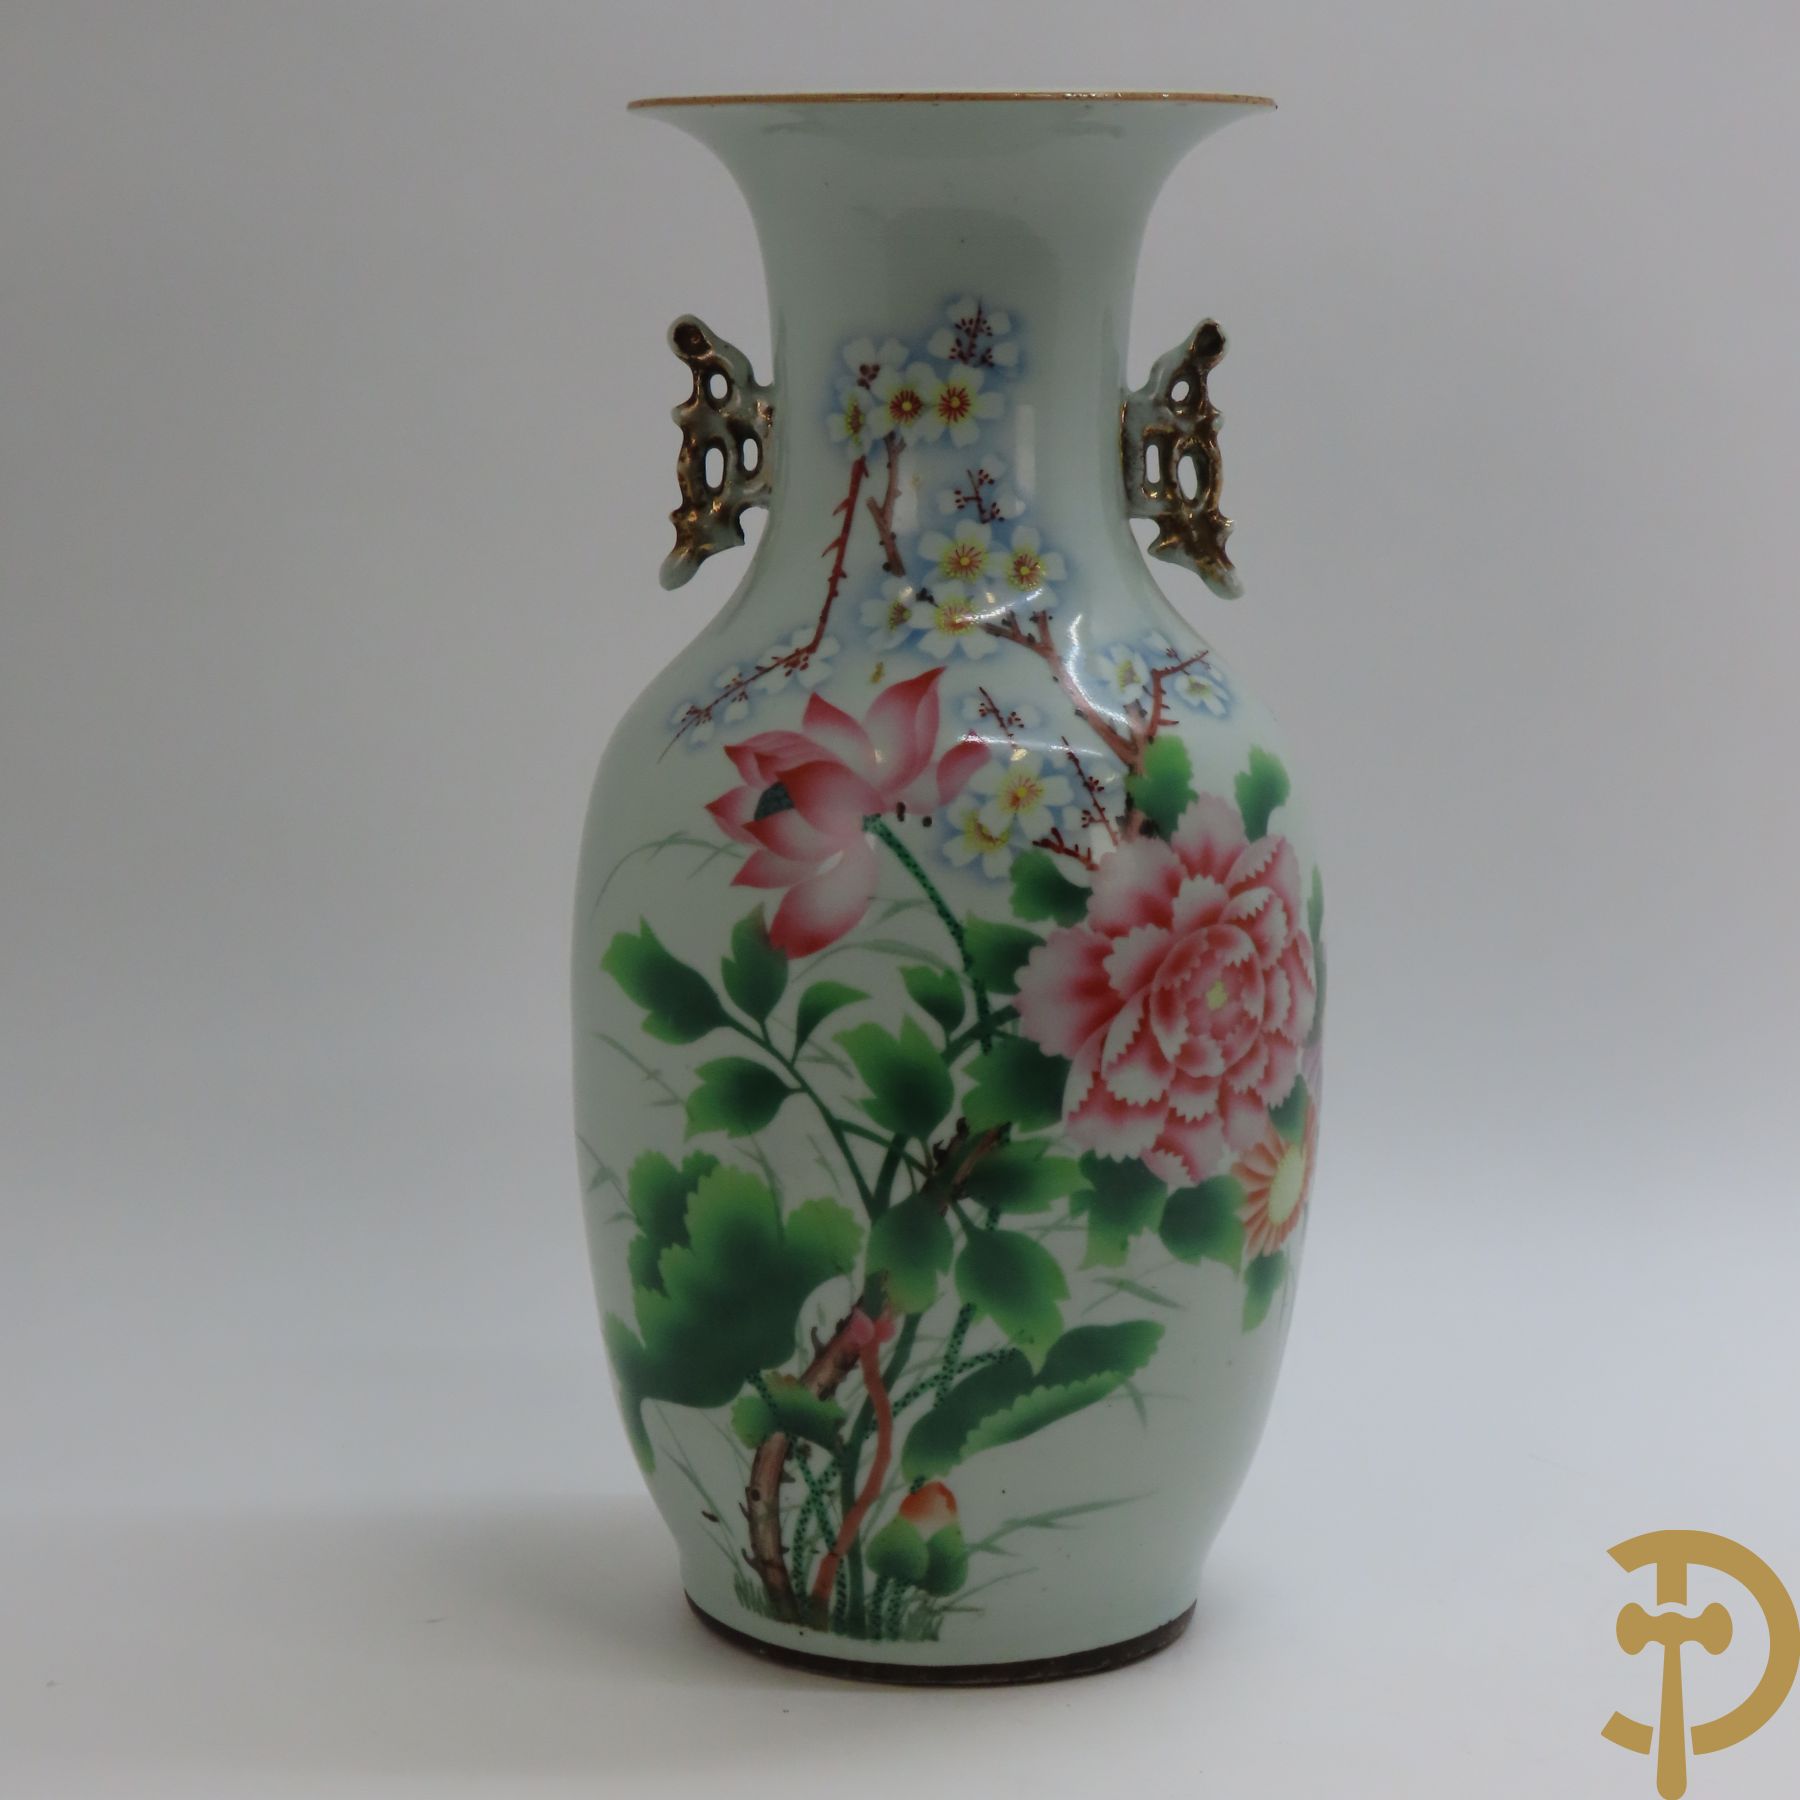 Chinese porseleinen vaas met bloemendecor, deels beschilderd en deels bedrukt